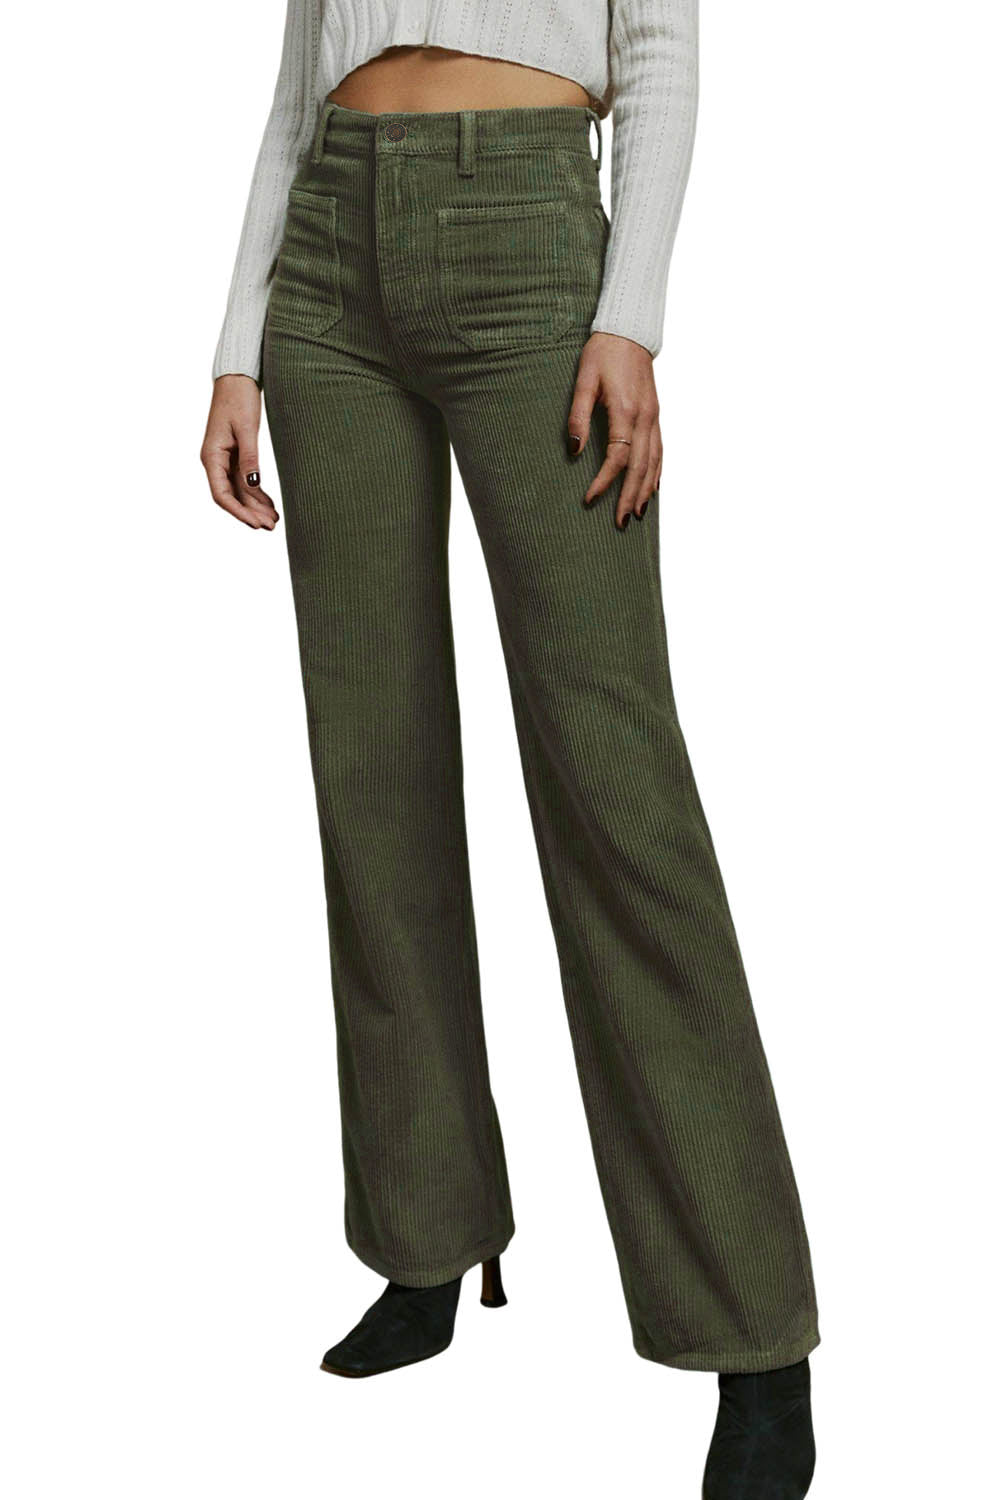 Zelene samtaste hlače s četvrtastim džepovima visokog struka